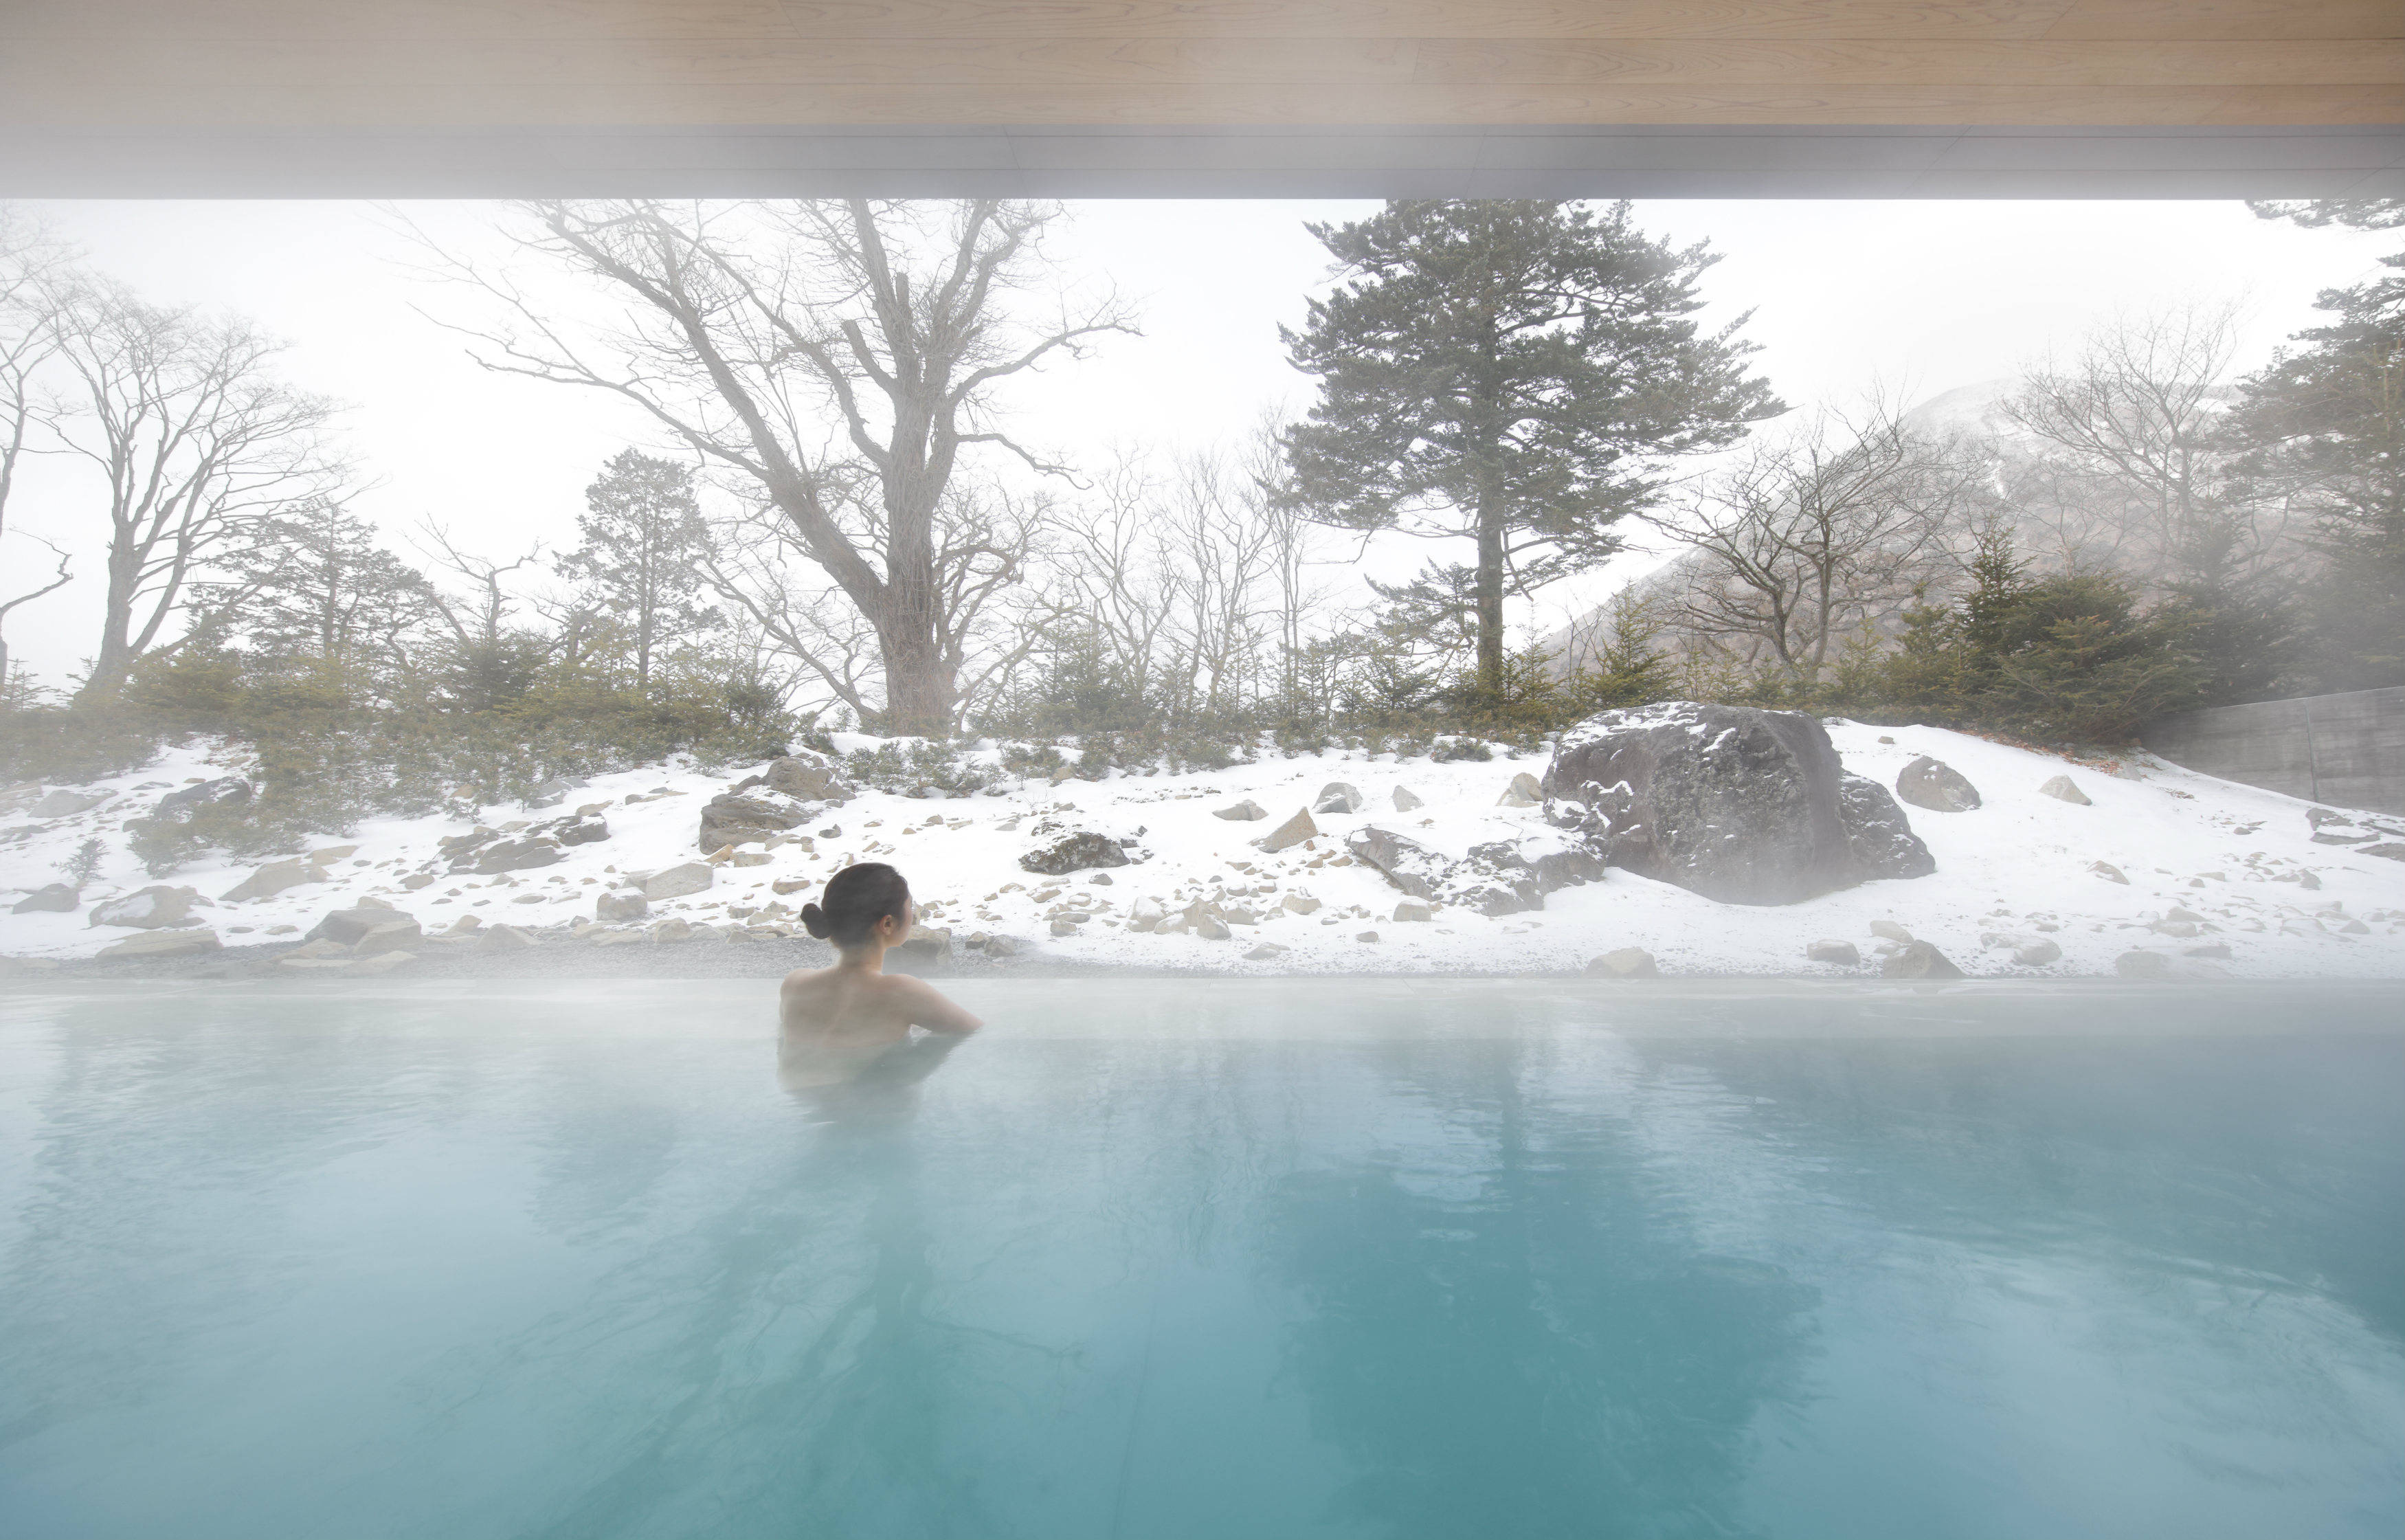 日光丽思卡尔顿酒店发布品牌首支冬日温泉体验宣传视频